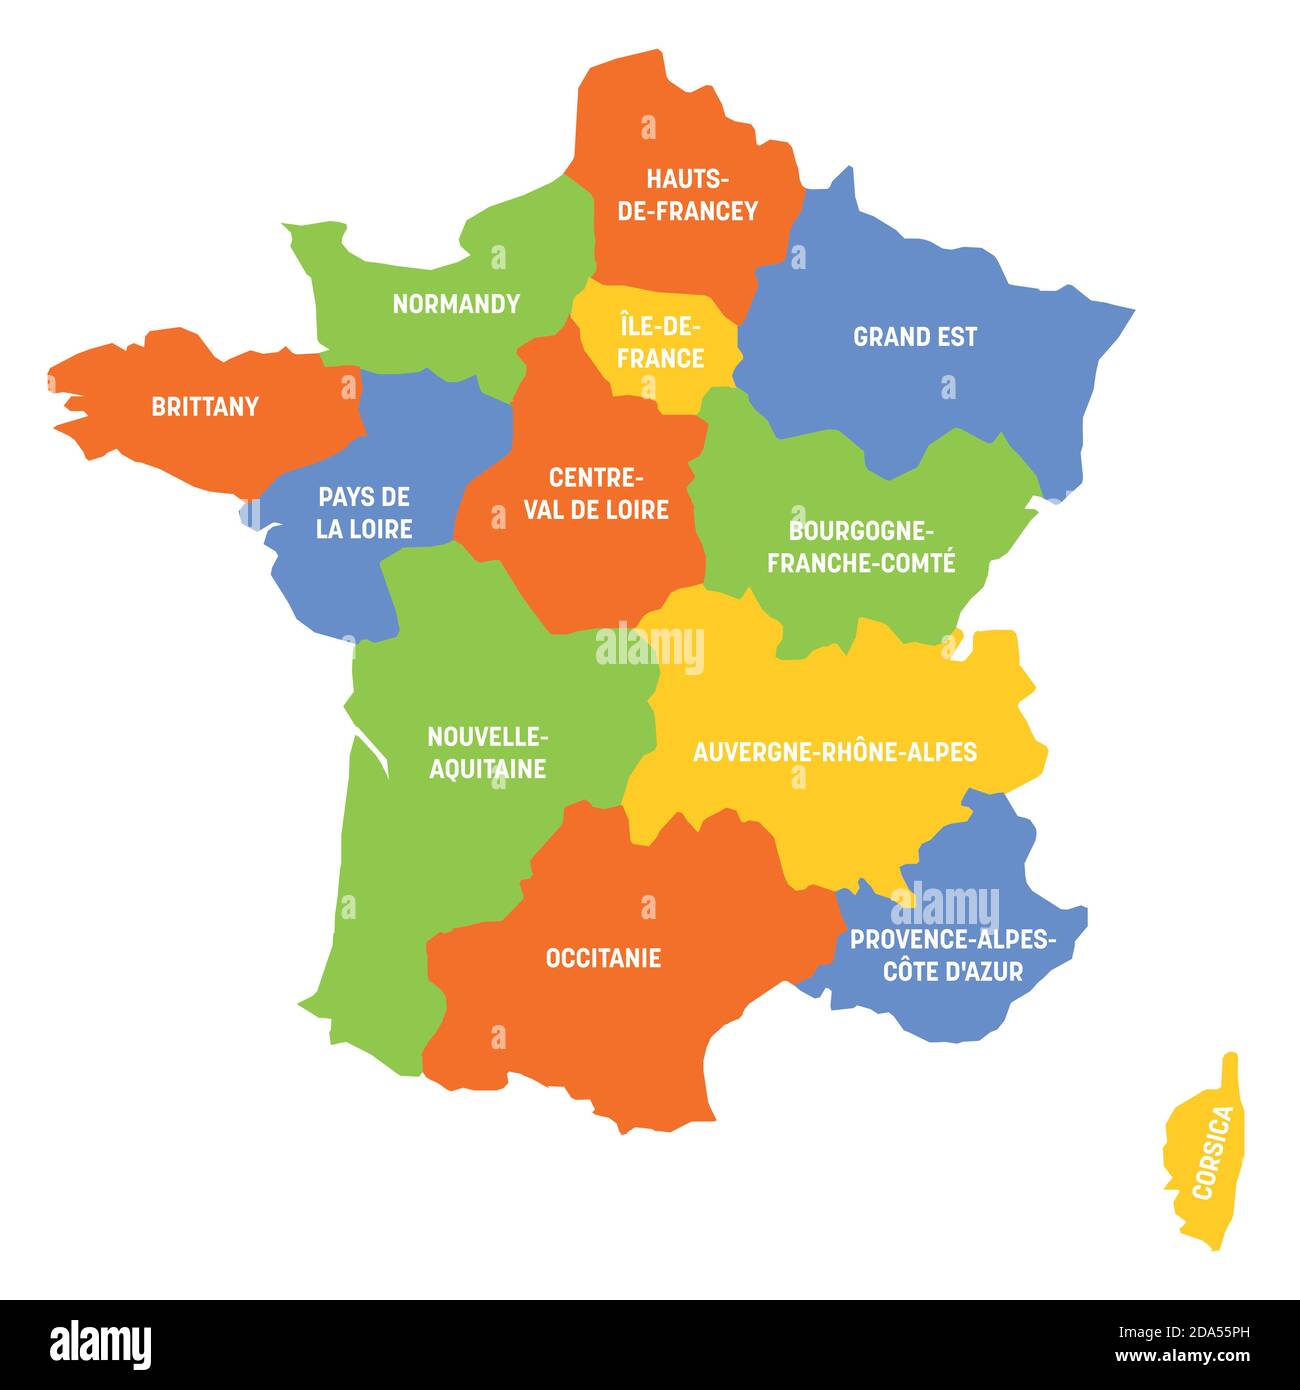 Frankreich politische Karte von Frankreich. Administrative Divisionen - Metropolregionen. Einfache flache Vektorkarte mit Beschriftungen. Stock Vektor